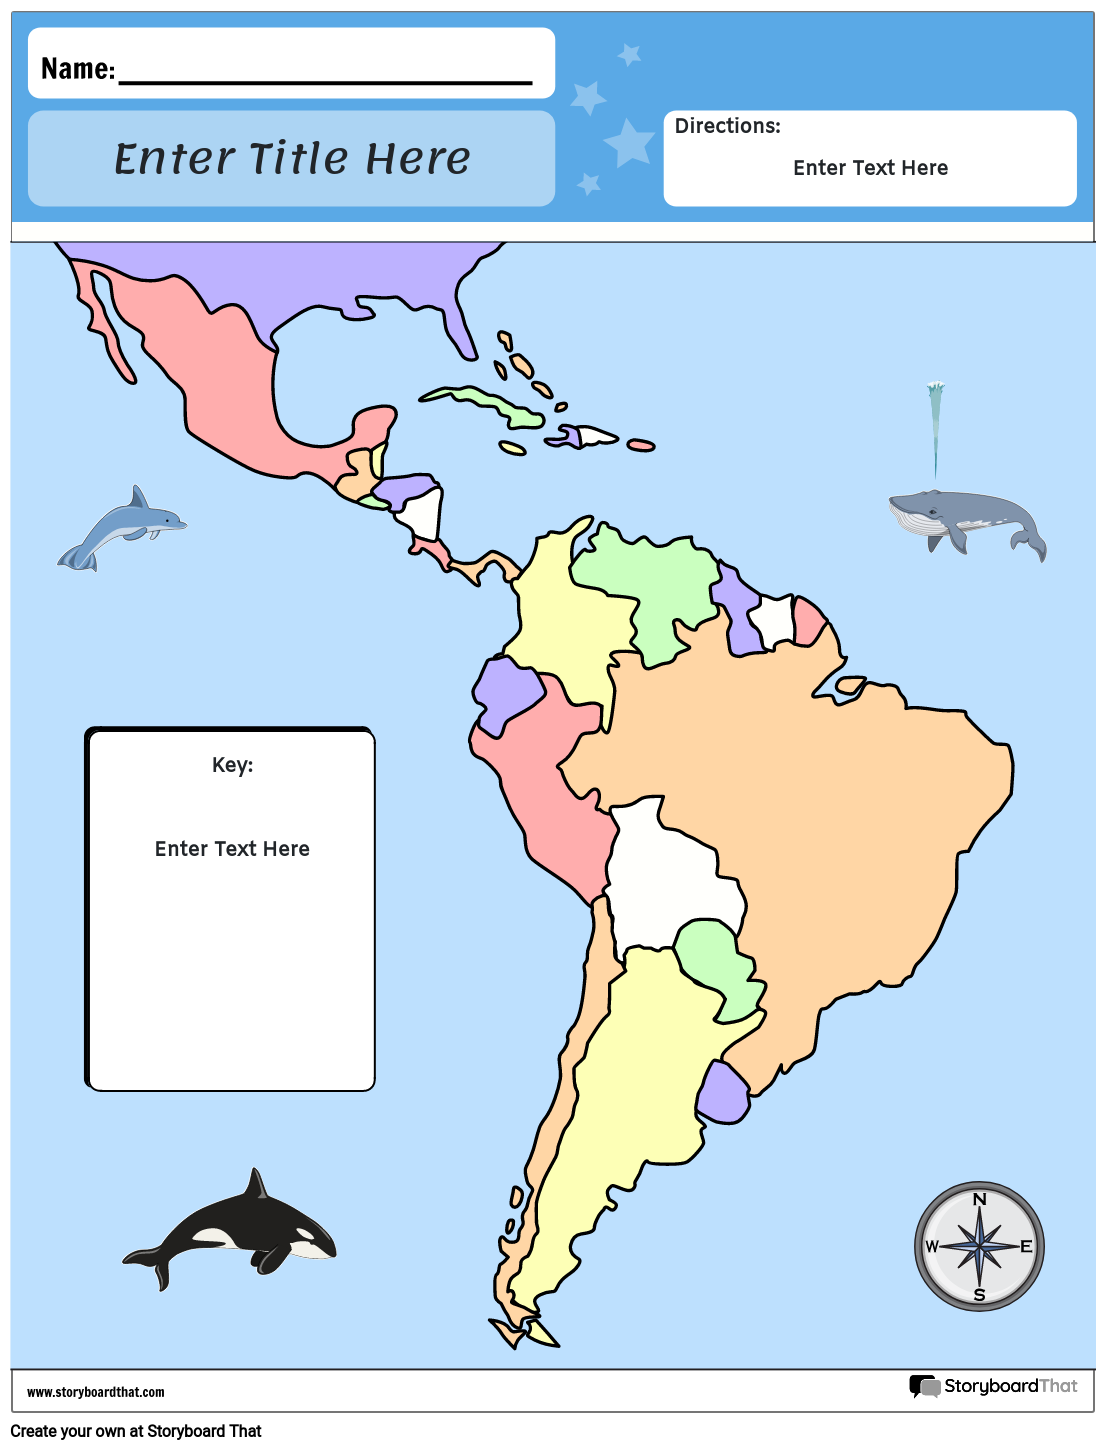 दक्षिण अमेरिका का नक्शा